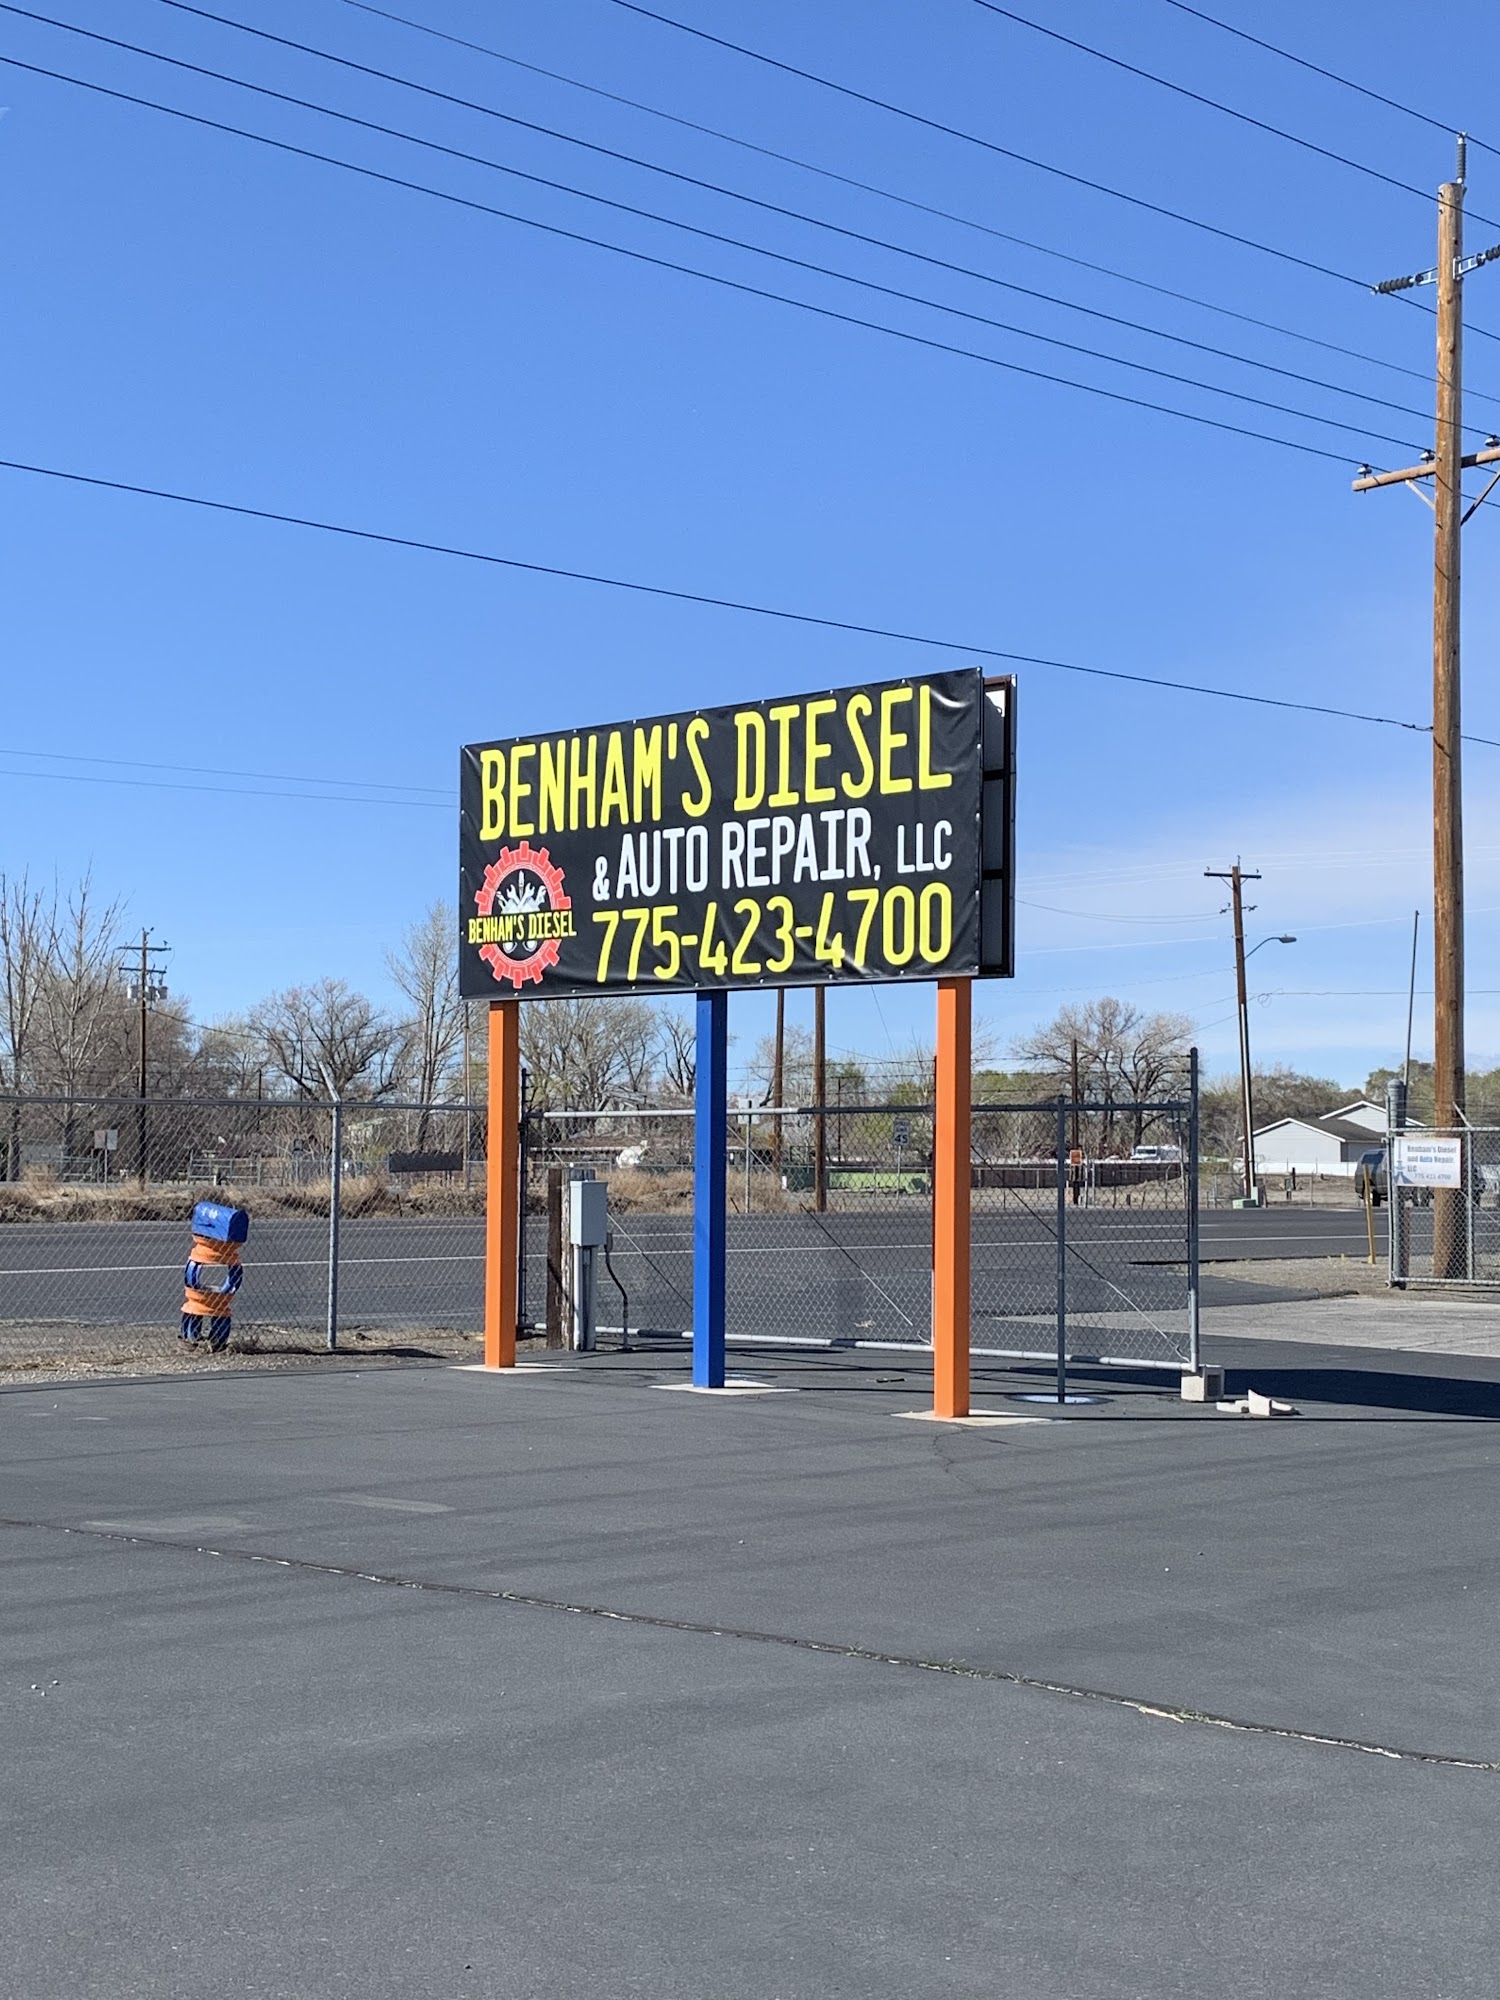 Benham's Diesel and Auto Repair, LLC